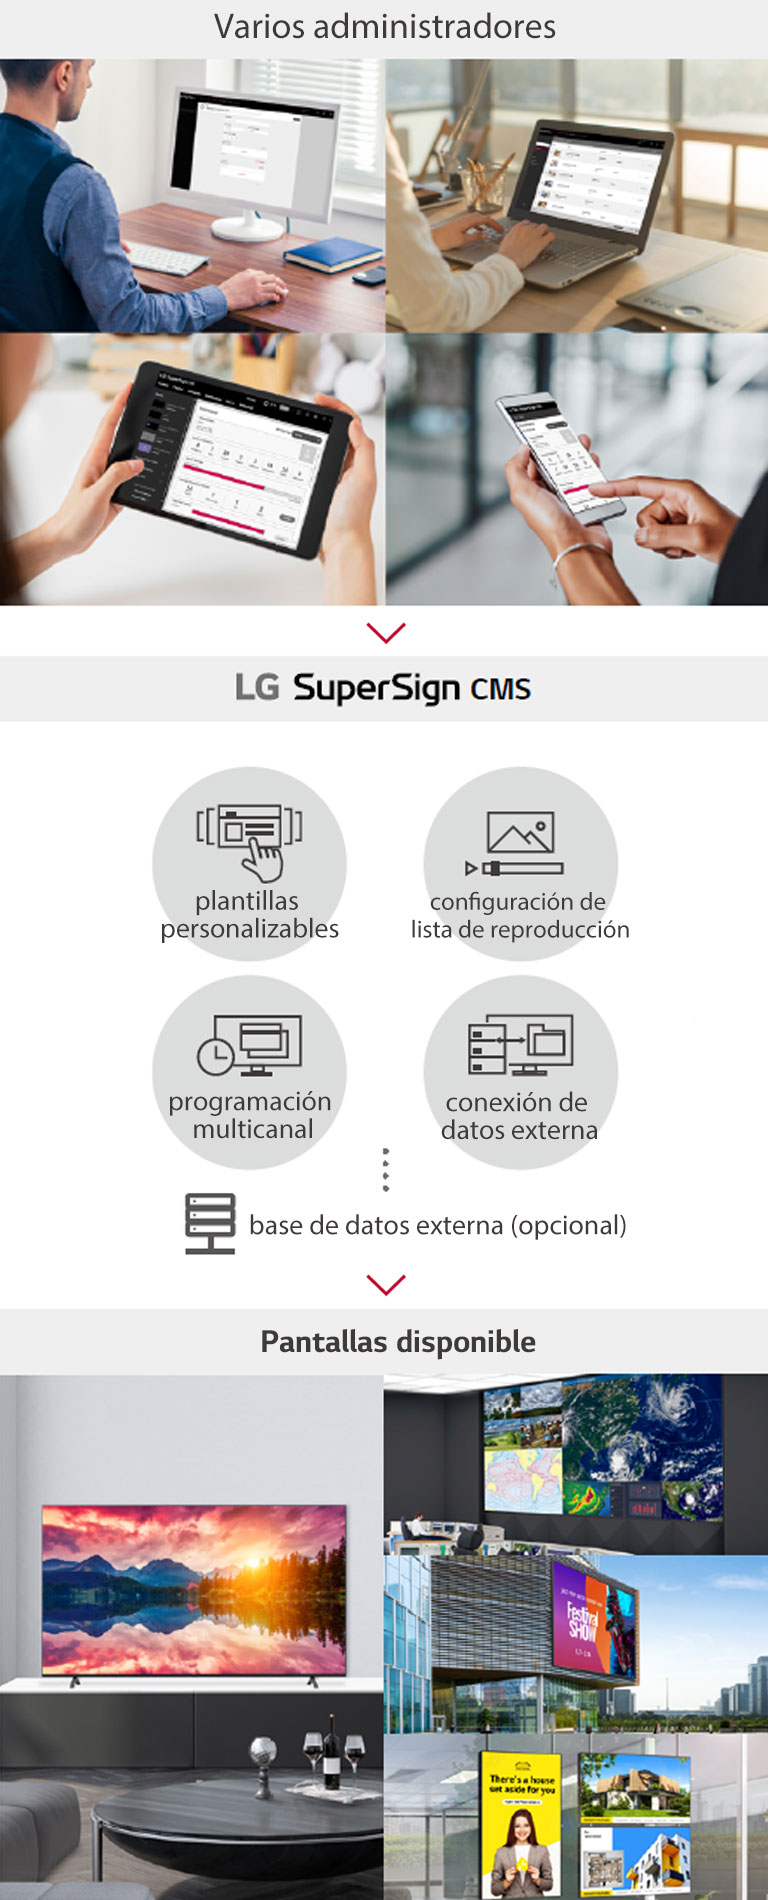 Varios administradores pueden acceder a LG SuperSign CMS a través de una PC, computadora portátil, tableta y dispositivos móviles para crear, regular y distribuir contenido multimedia digital adaptado a una amplia gama de pantallas.